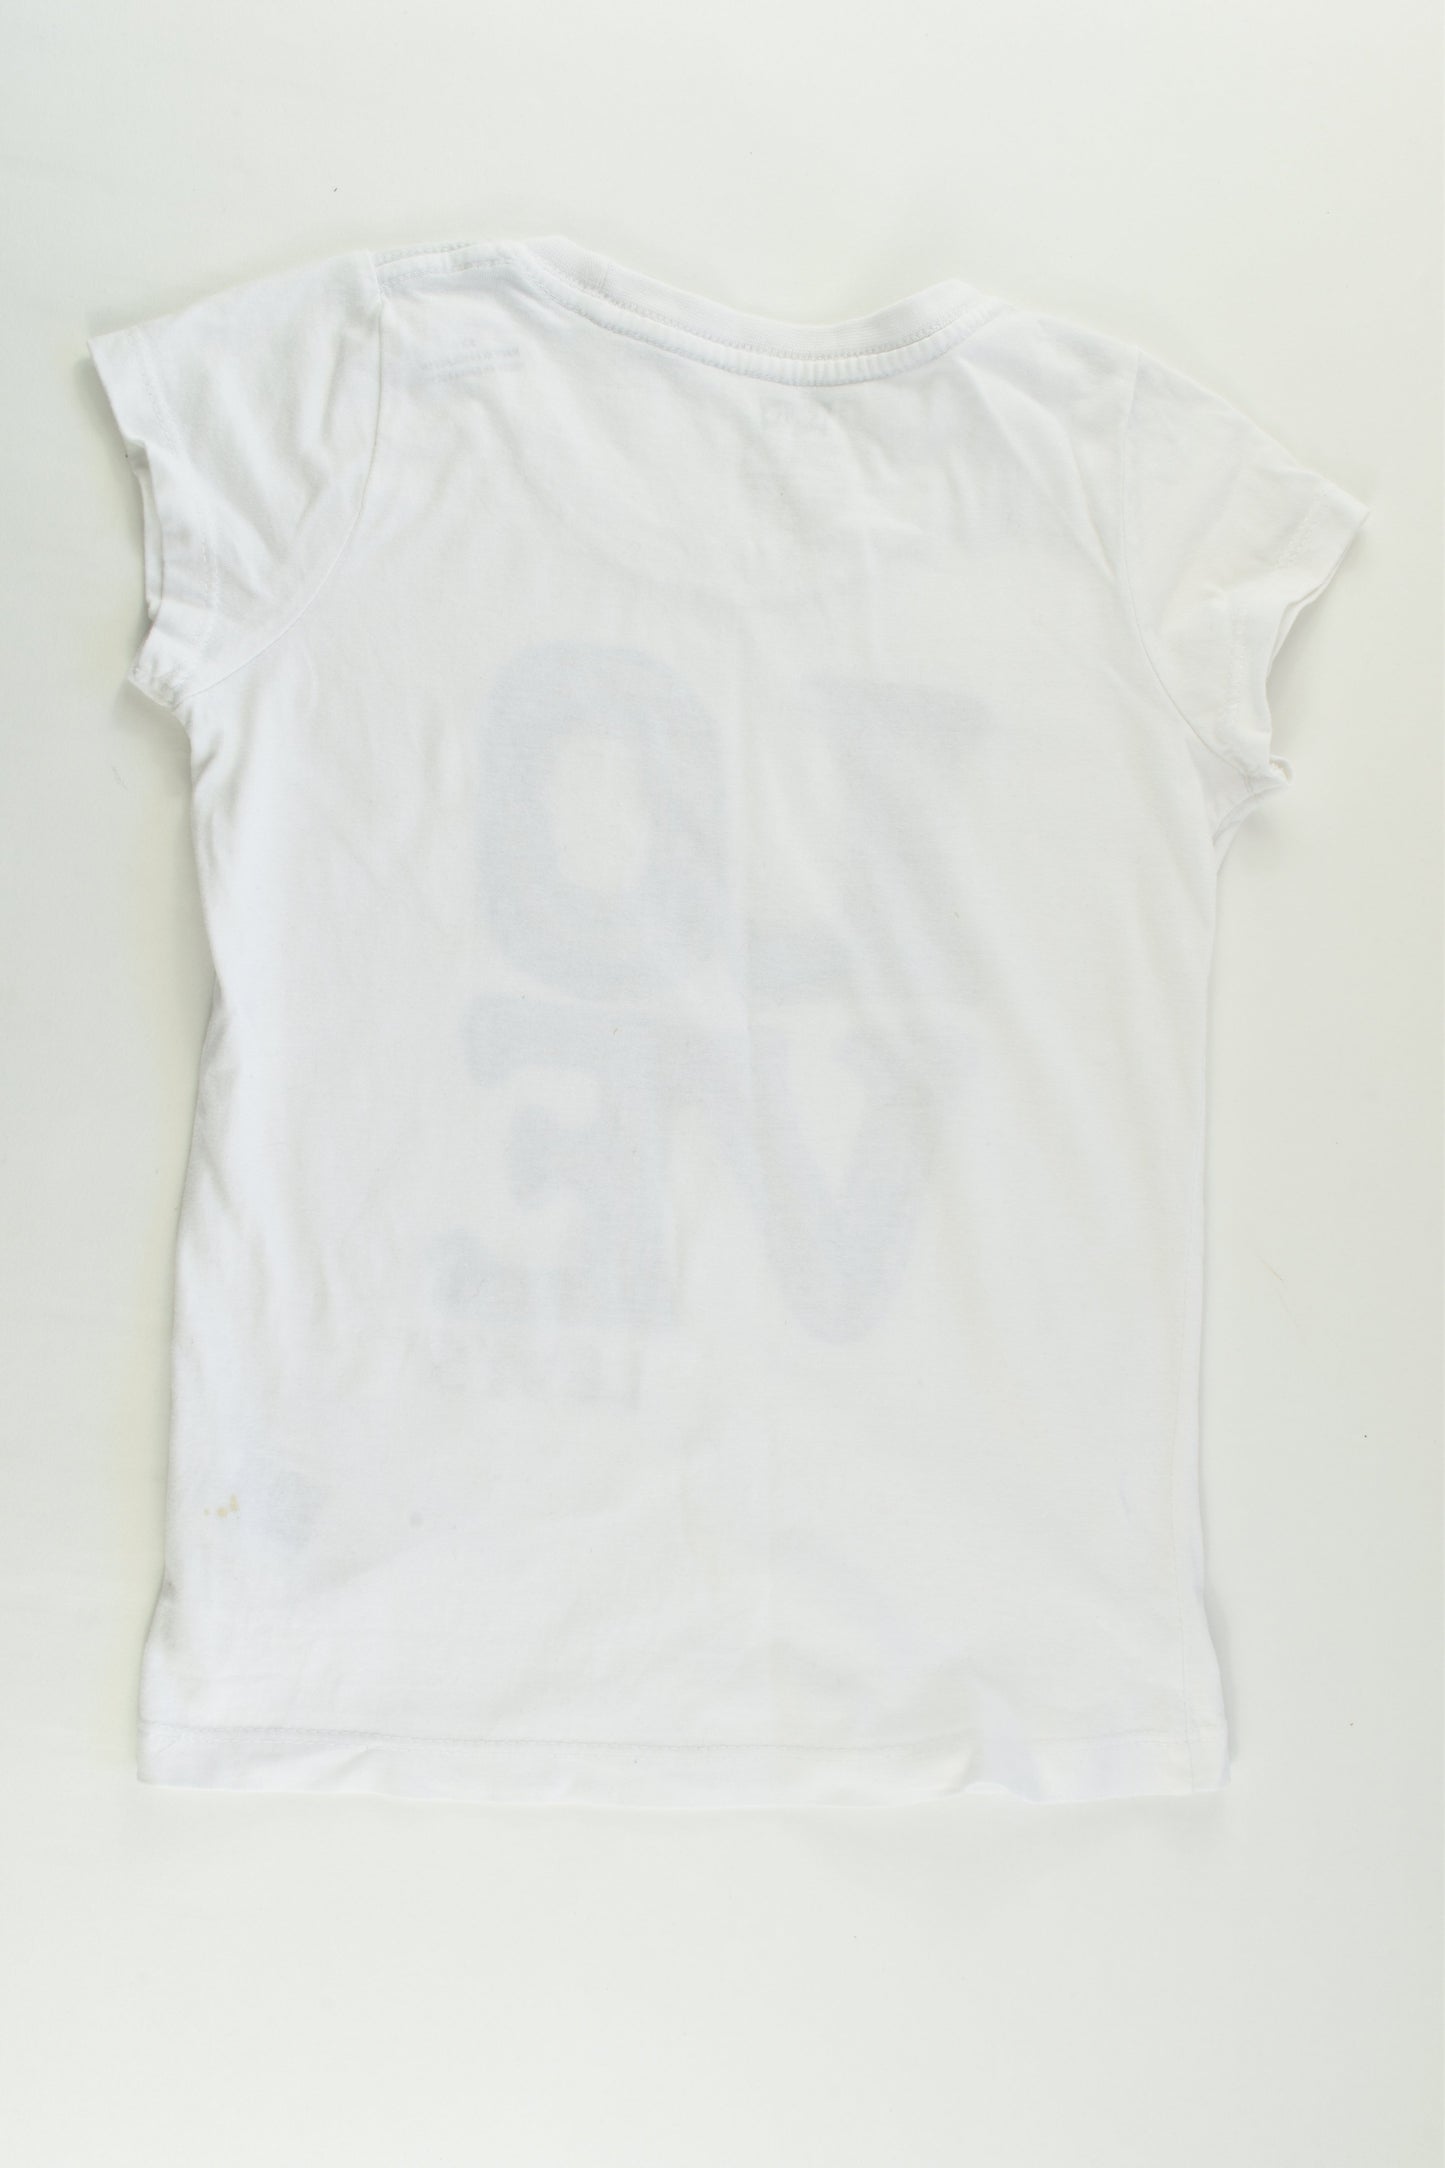 Levi's Size 6-7 'Love' T-shirt